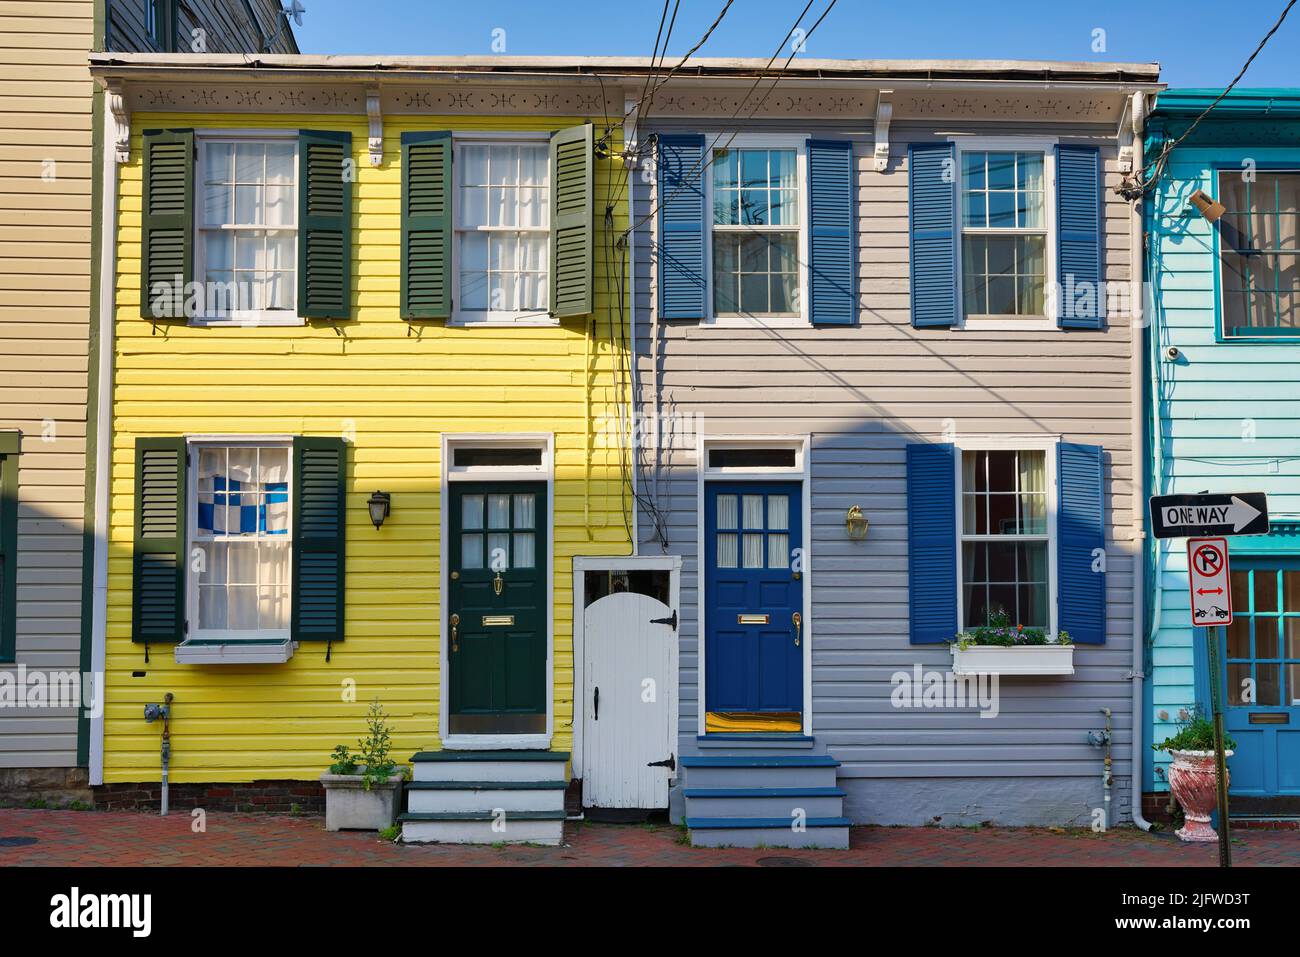 Case storiche della città nel centro di Annapolis, Maryland, USA. Tipica architettura colorata nella capitale del Maryland. Foto Stock